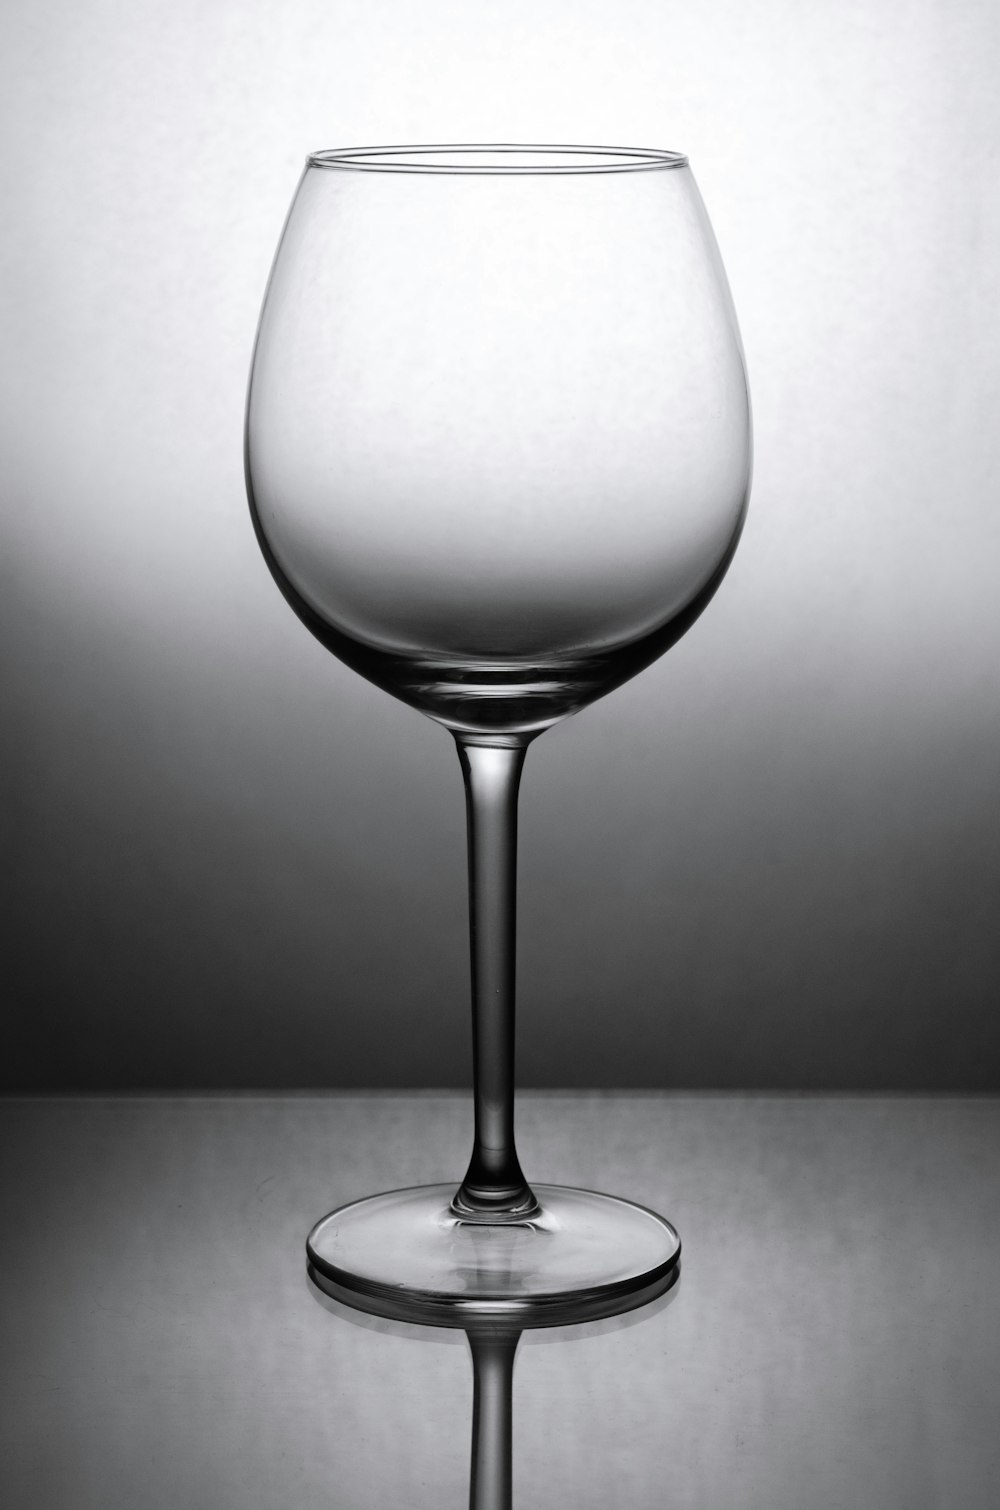 Graustufenfoto eines Weinglases